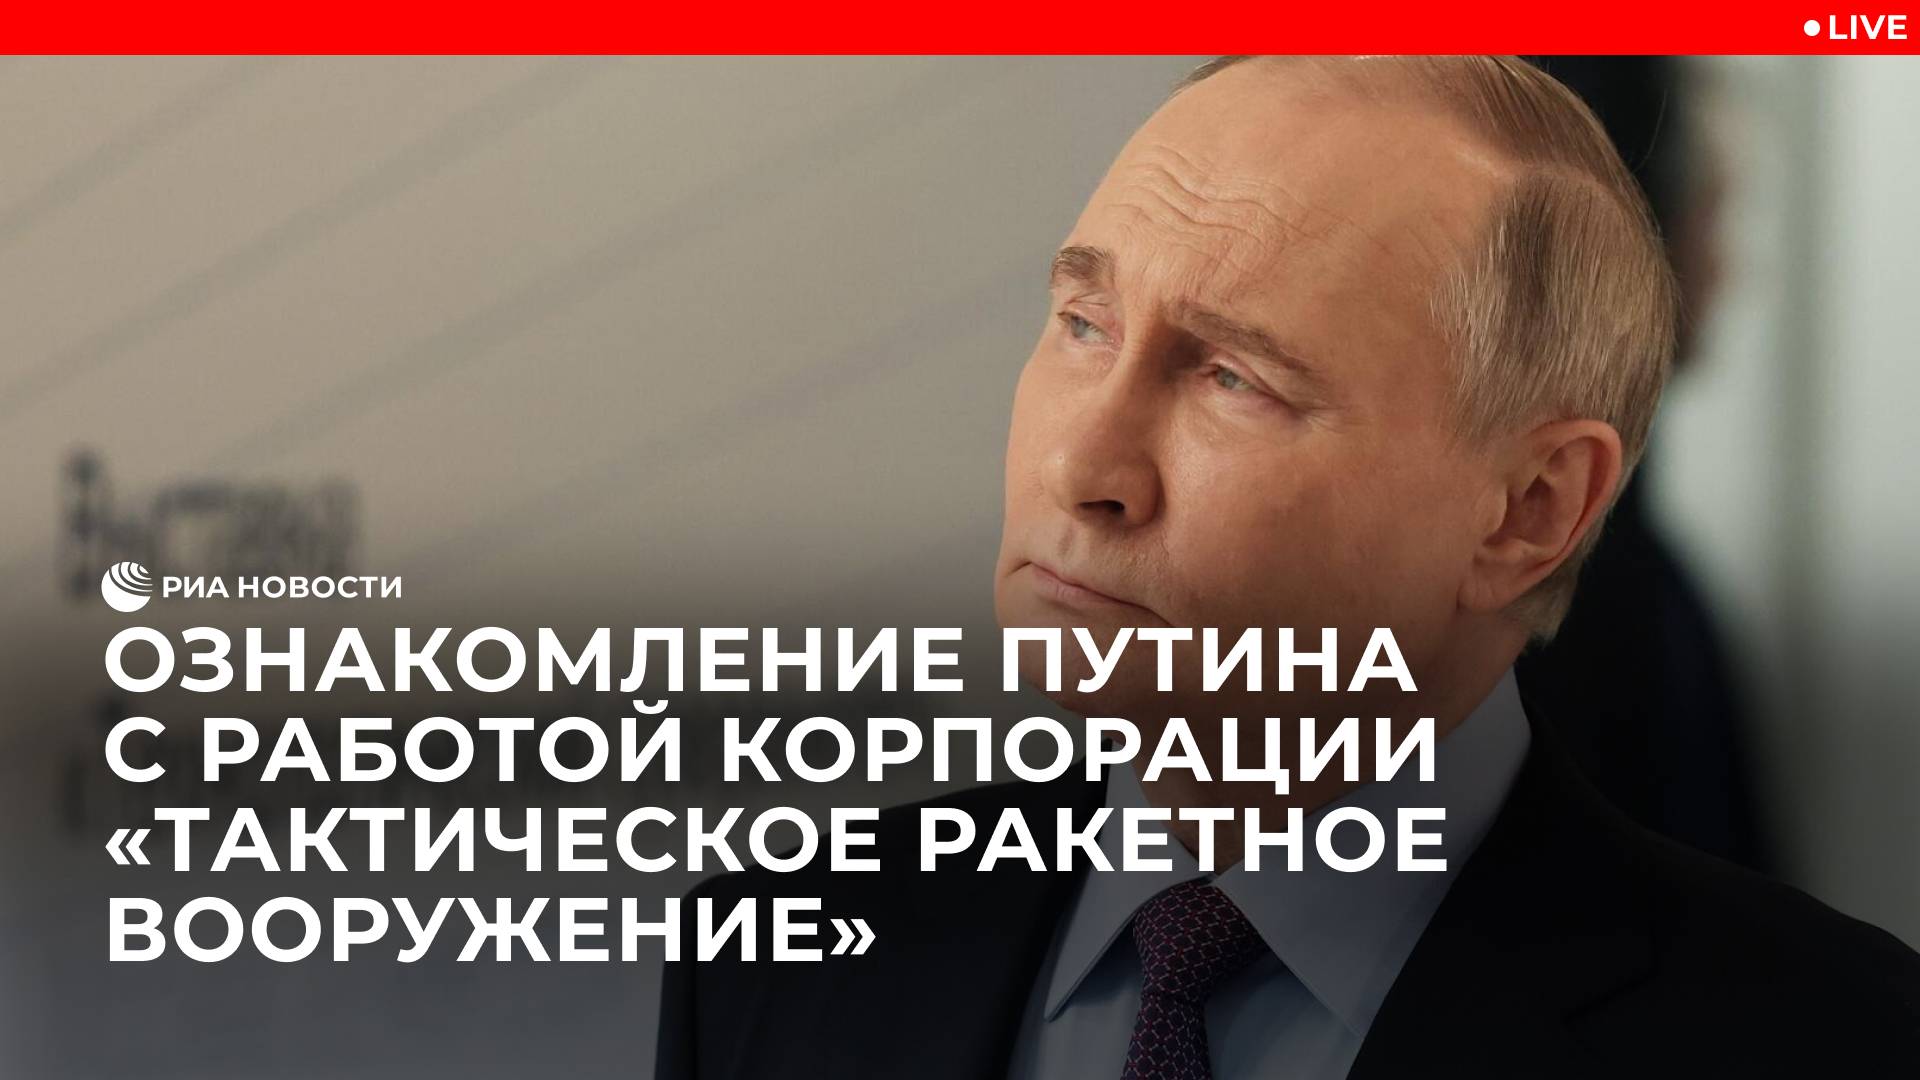 Ознакомление Путина с работой корпорации "Тактическое ракетное вооружение"